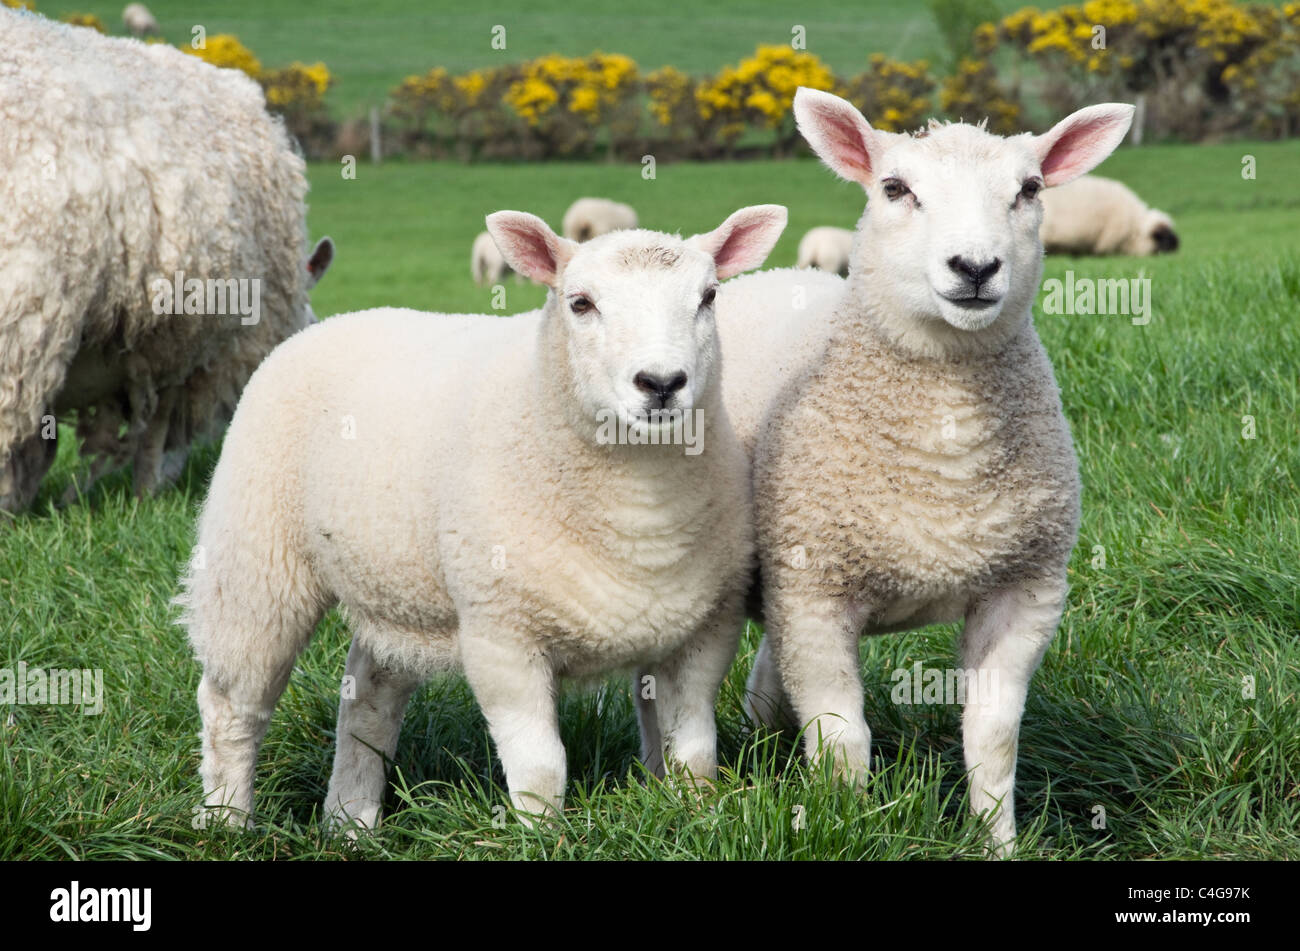 Escena de la agricultura del país con dos ovejas gemelas inquisitivas sanas corderos y una oveja en un campo de la granja en la primavera. Isla de Anglesey, Gales del Norte, Reino Unido, Gran Bretaña Foto de stock